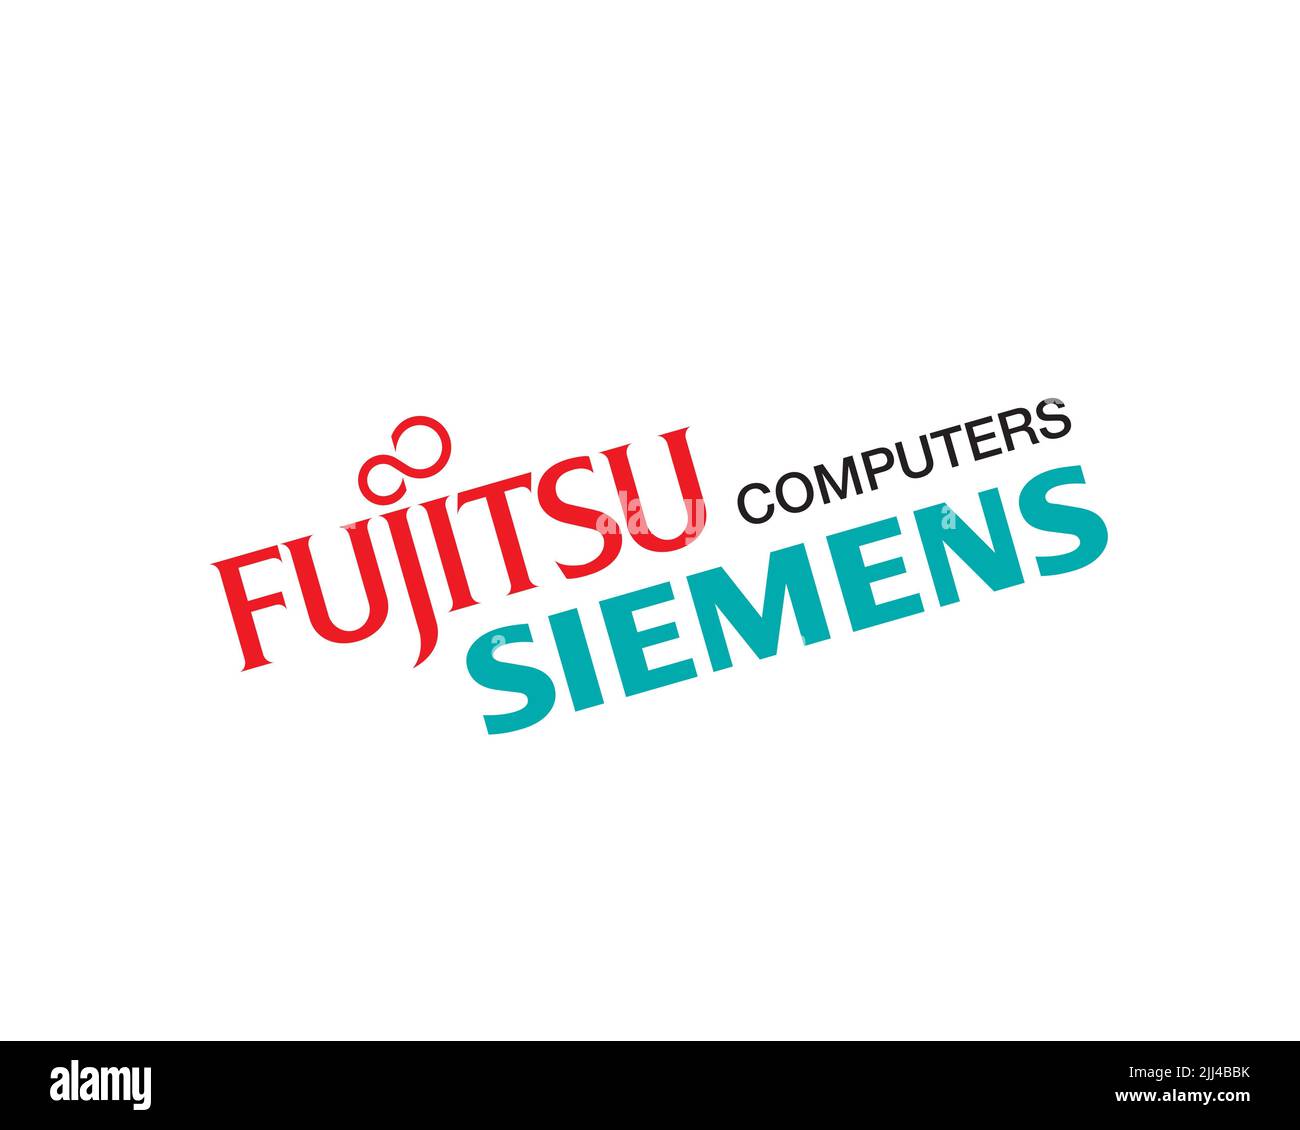 Fujitsu Siemens Computers, gedrehtes Logo, Weisser Hintergrund Stock Photo